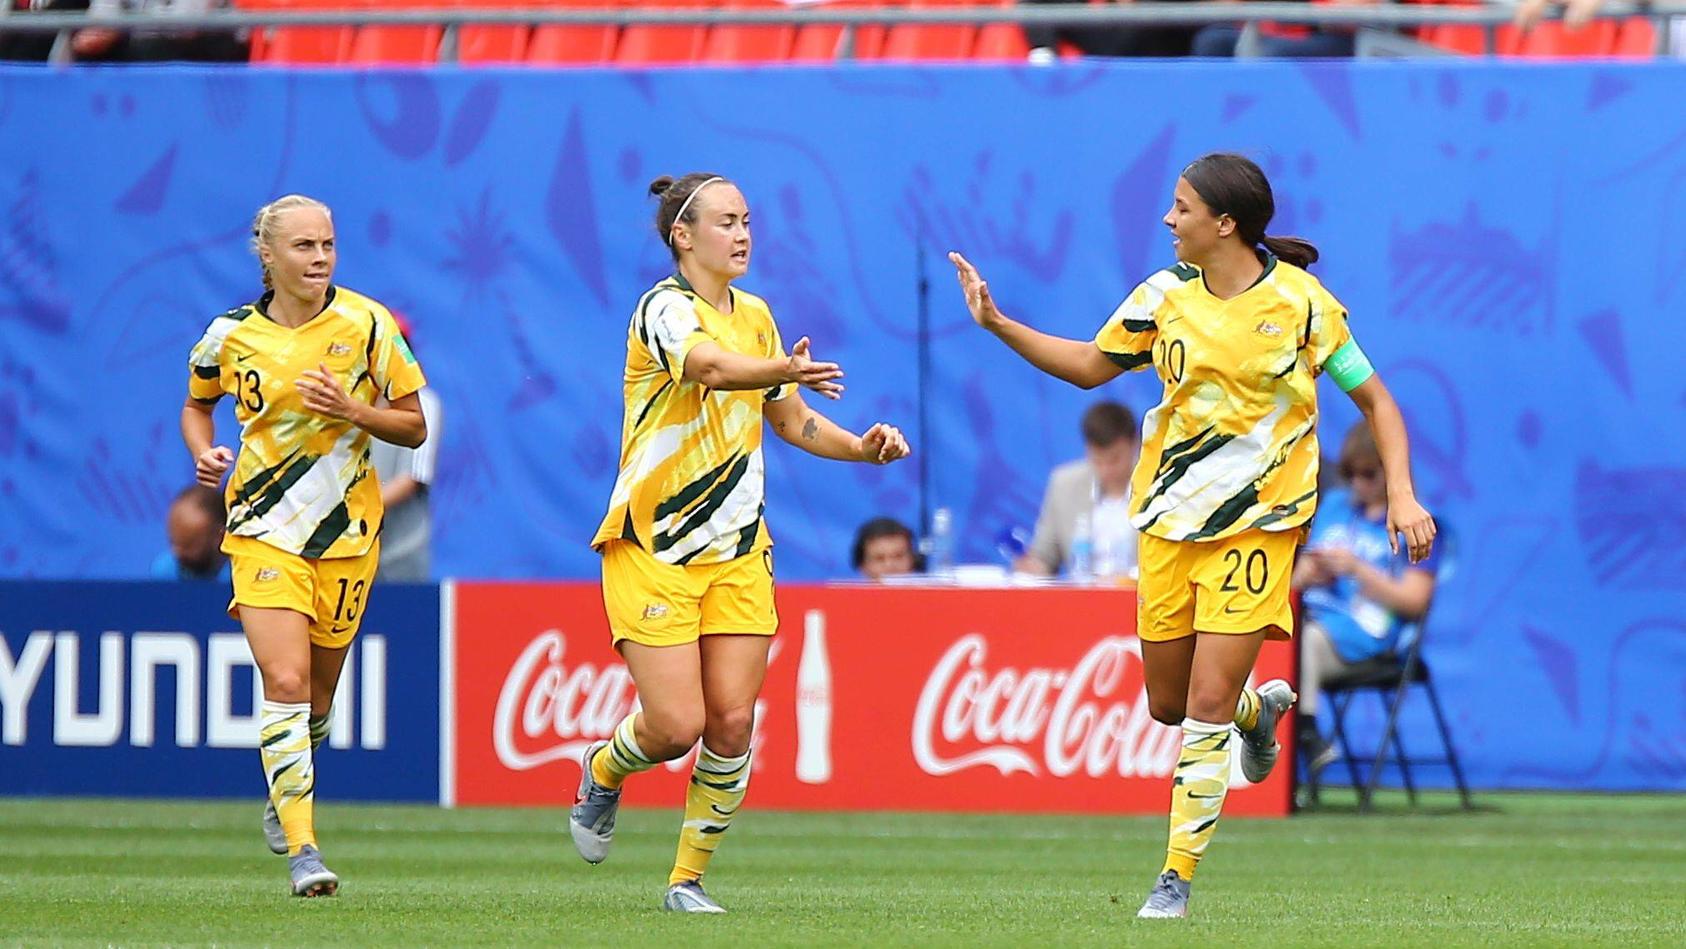 Die Australierinnen stehen aktuell auf Platz 8 der FIFA-Weltrangliste – ihre männlichen Kollegen liegen momentan auf Rang 44.